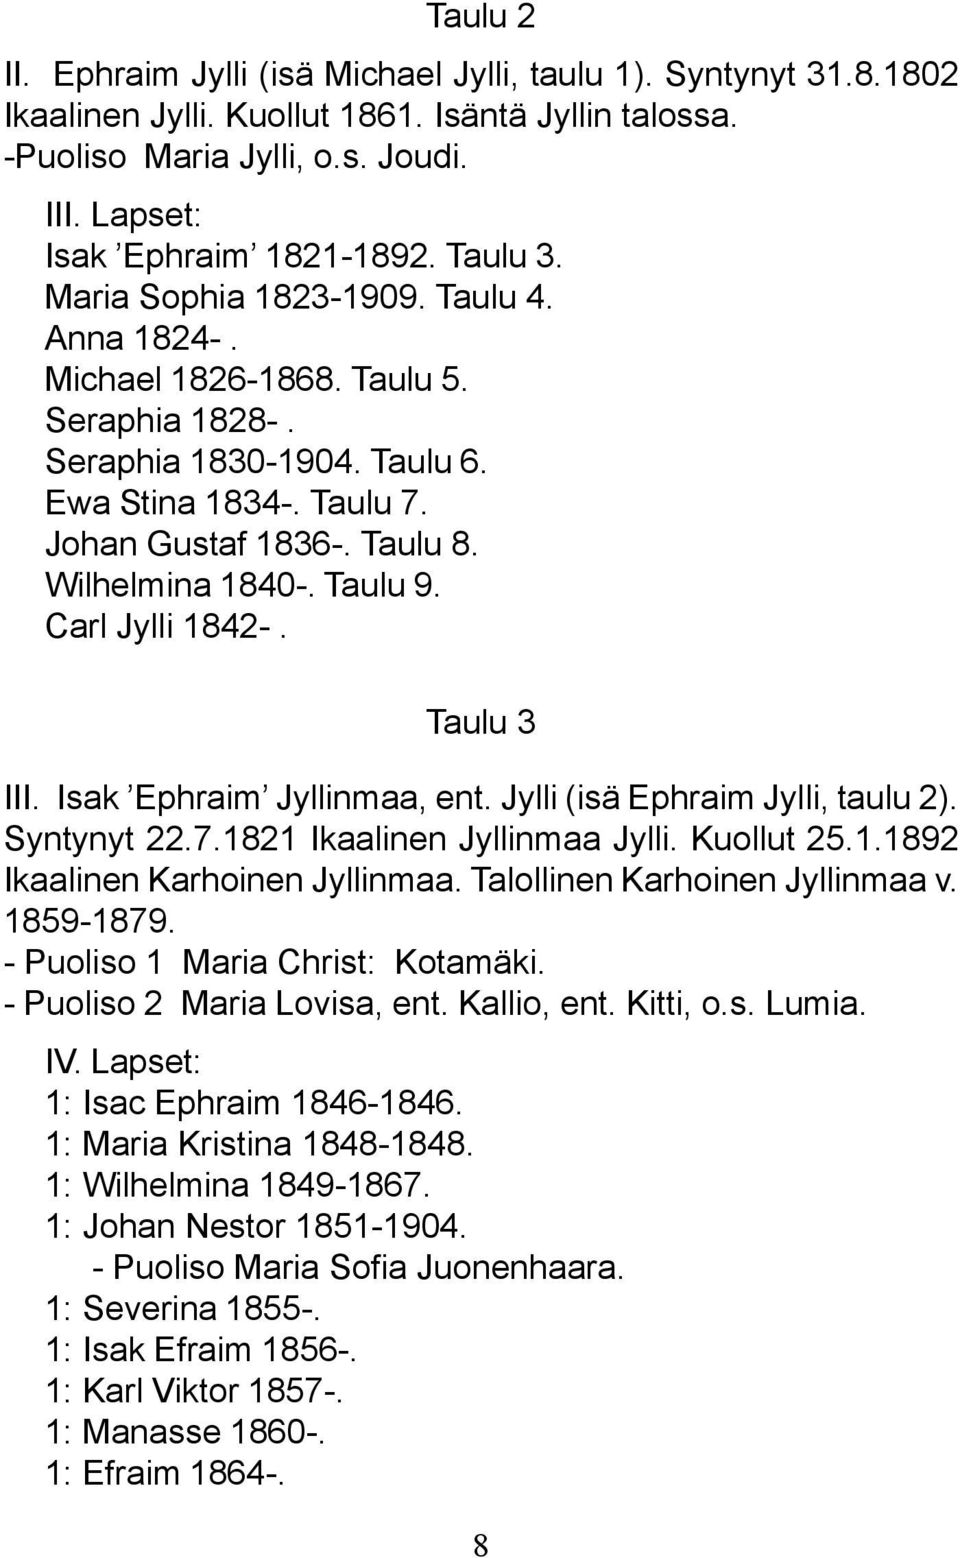 Taulu 9. Carl Jylli 1842-. Taulu 3 III. Isak Ephraim Jyllinmaa, ent. Jylli (isä Ephraim Jylli, taulu 2). Syntynyt 22.7.1821 Ikaalinen Jyllinmaa Jylli. Kuollut 25.1.1892 Ikaalinen Karhoinen Jyllinmaa.